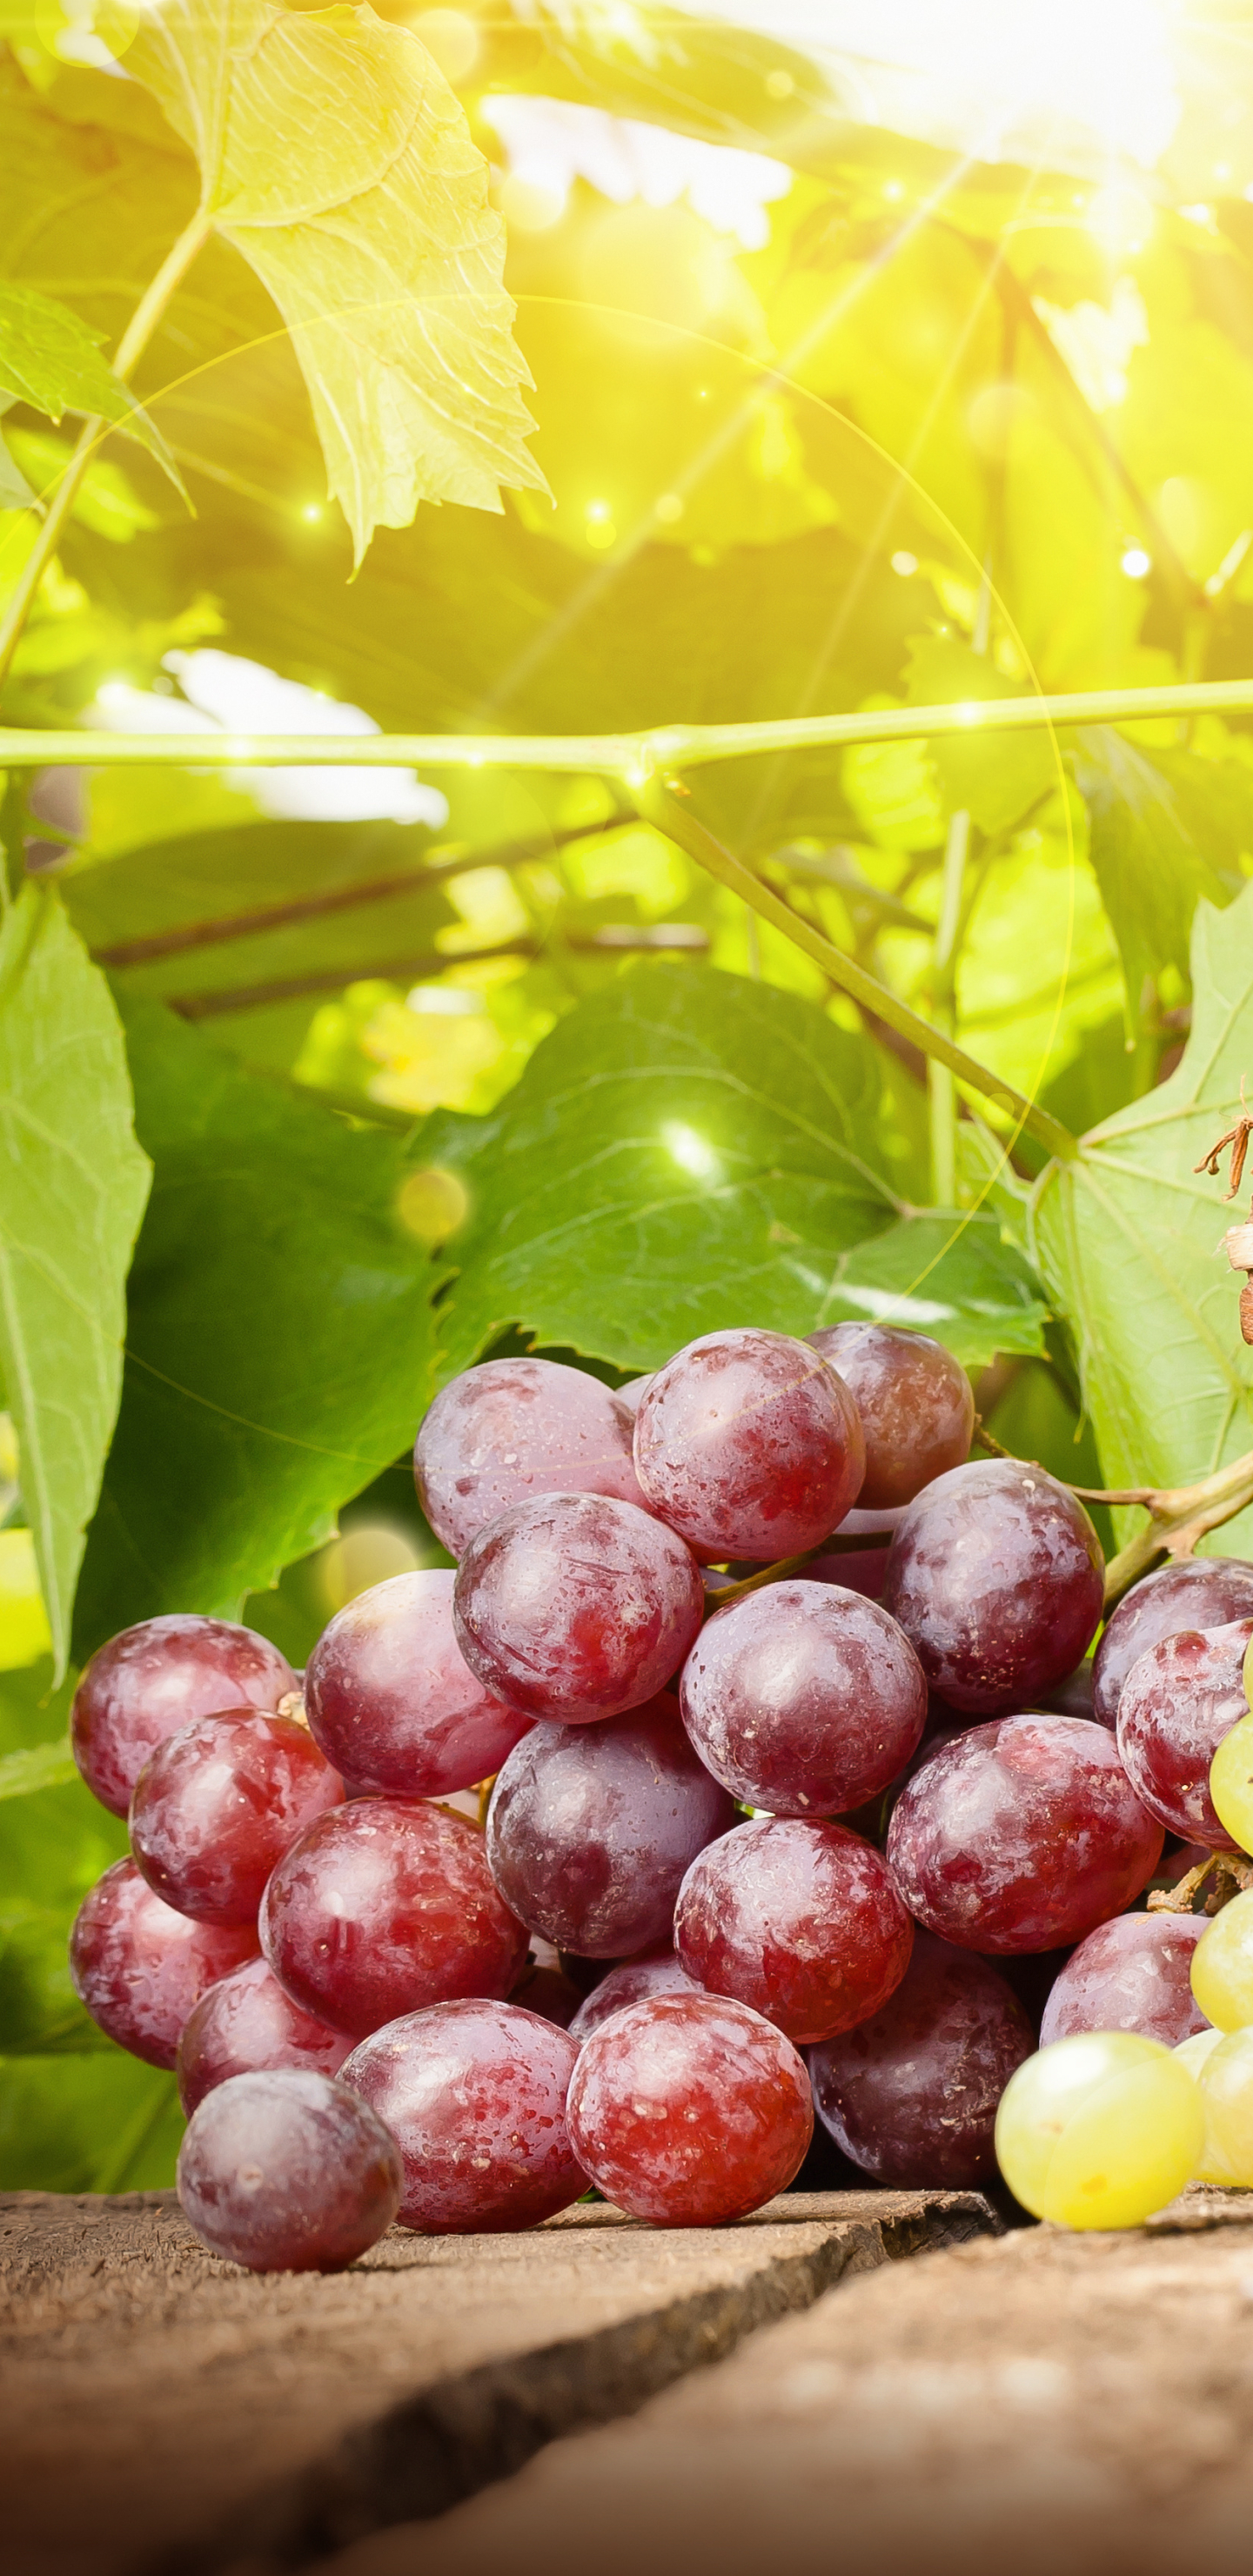 Free download wallpaper Fruits, Food, Grapes, Fruit, Basket on your PC desktop